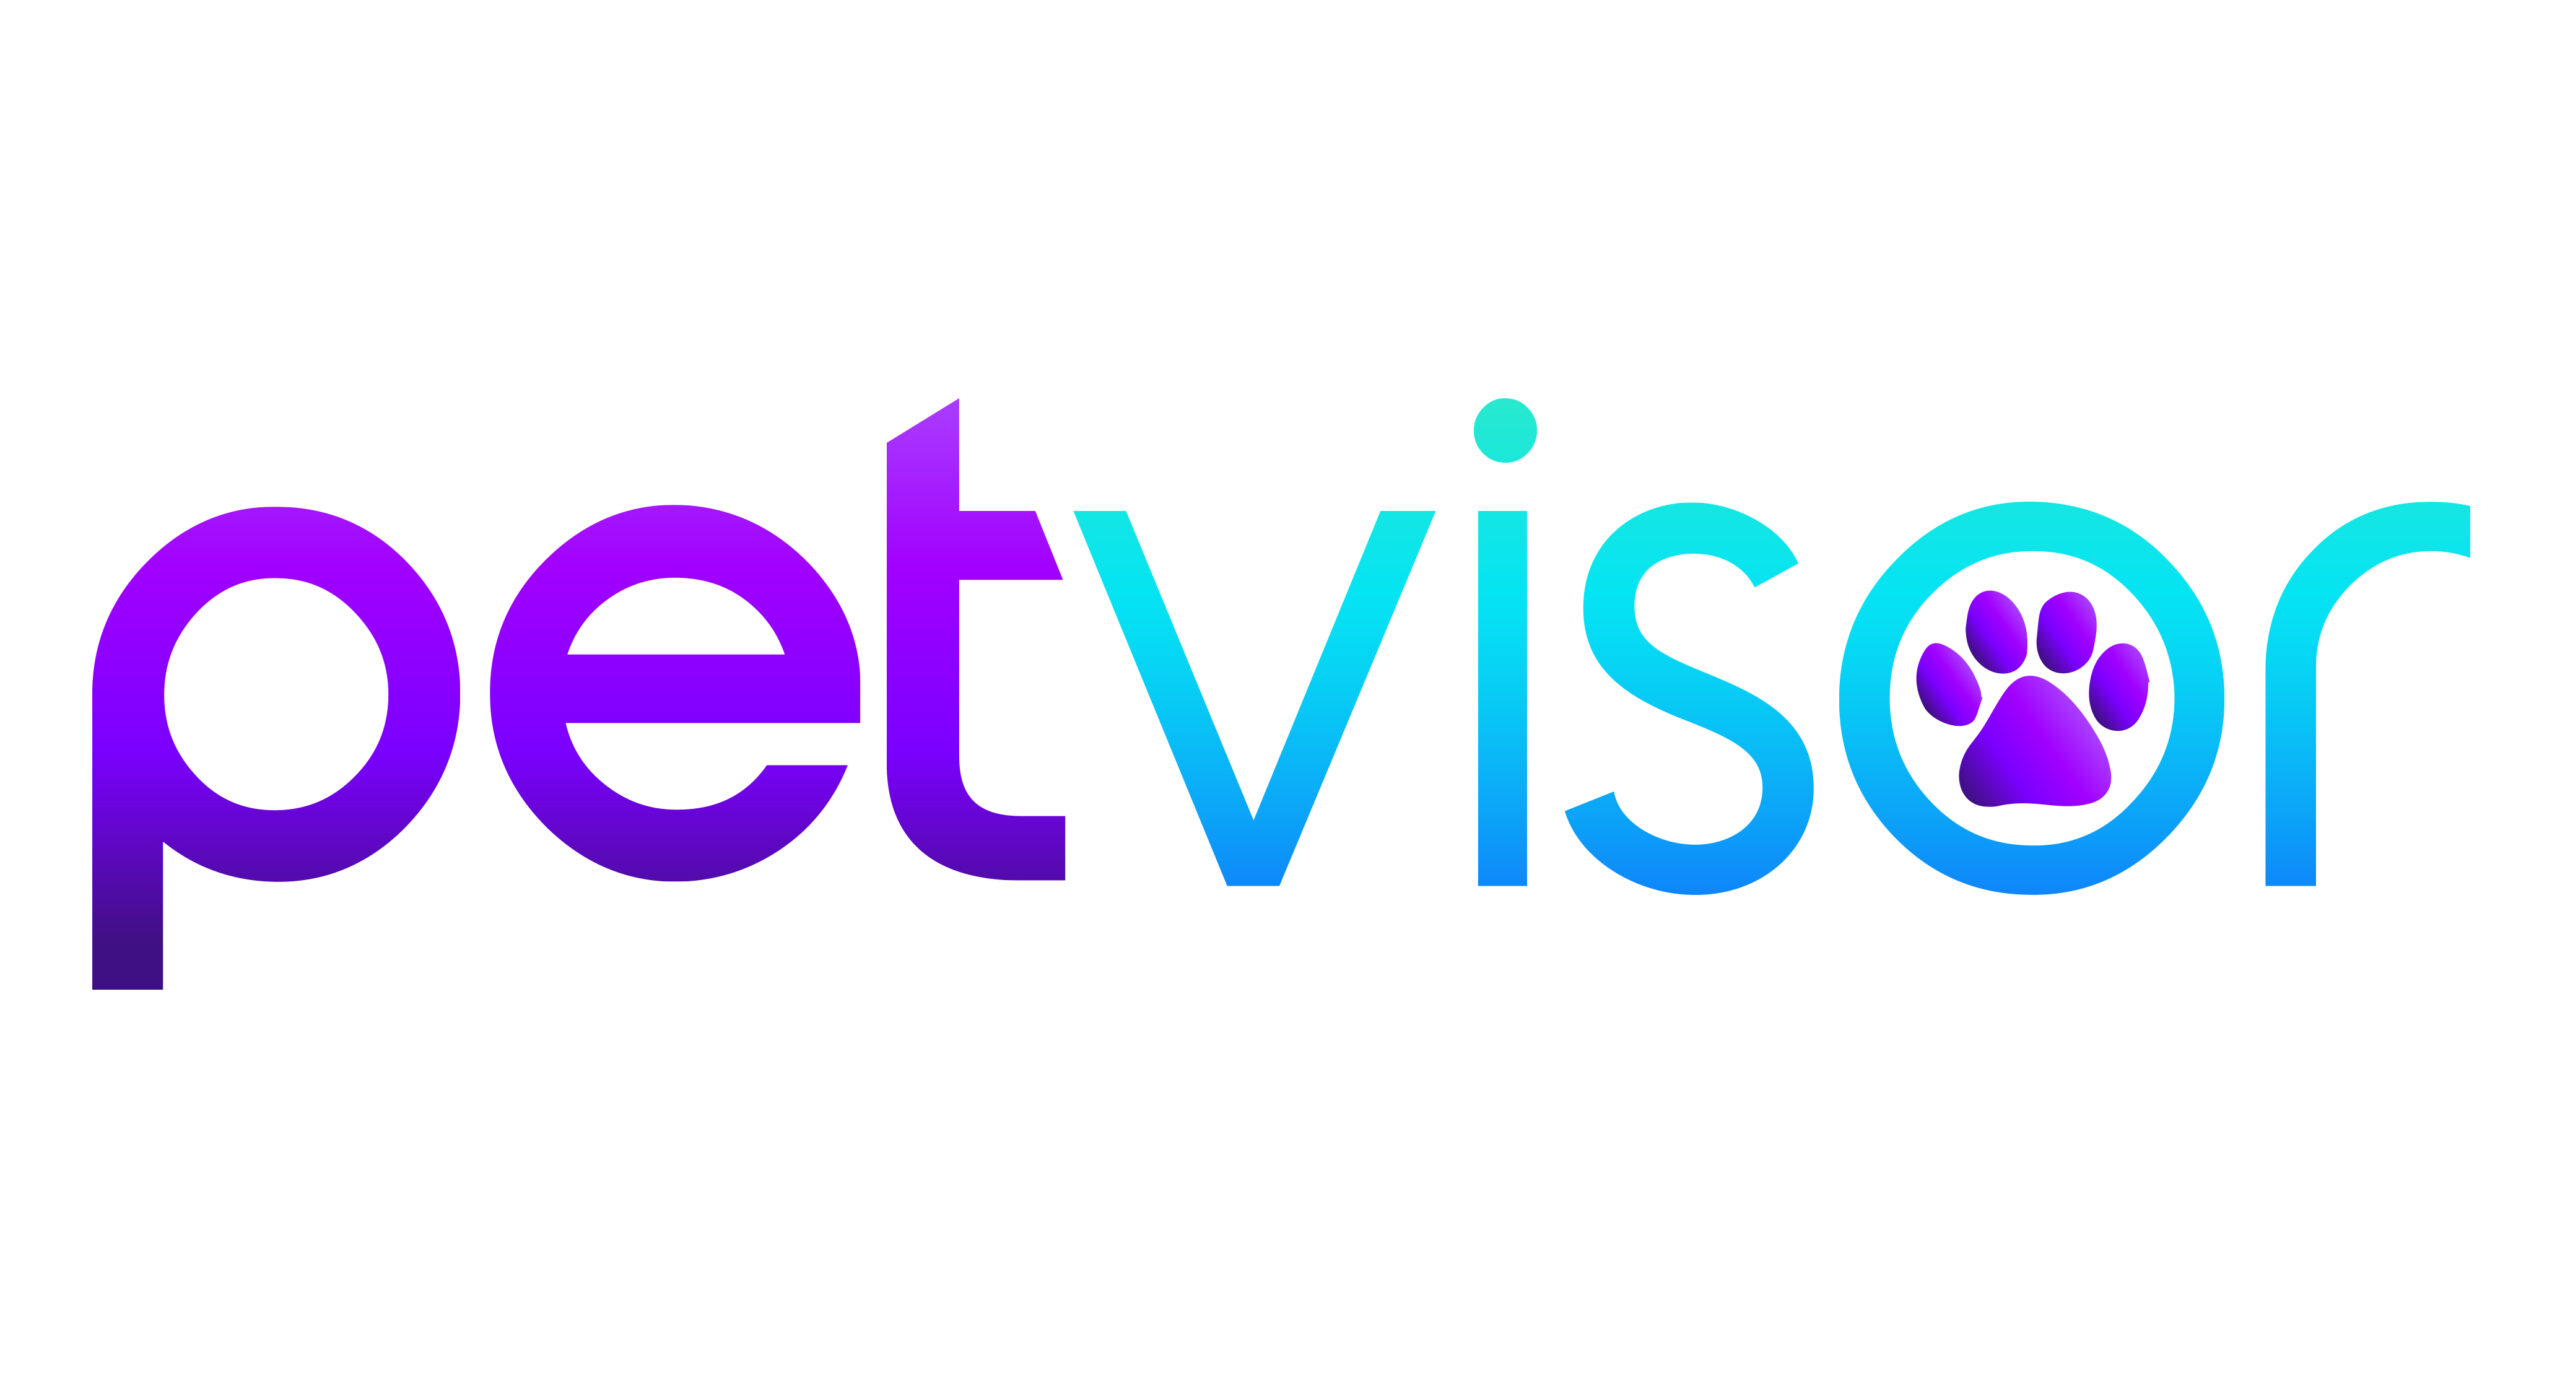 Petvisor logo